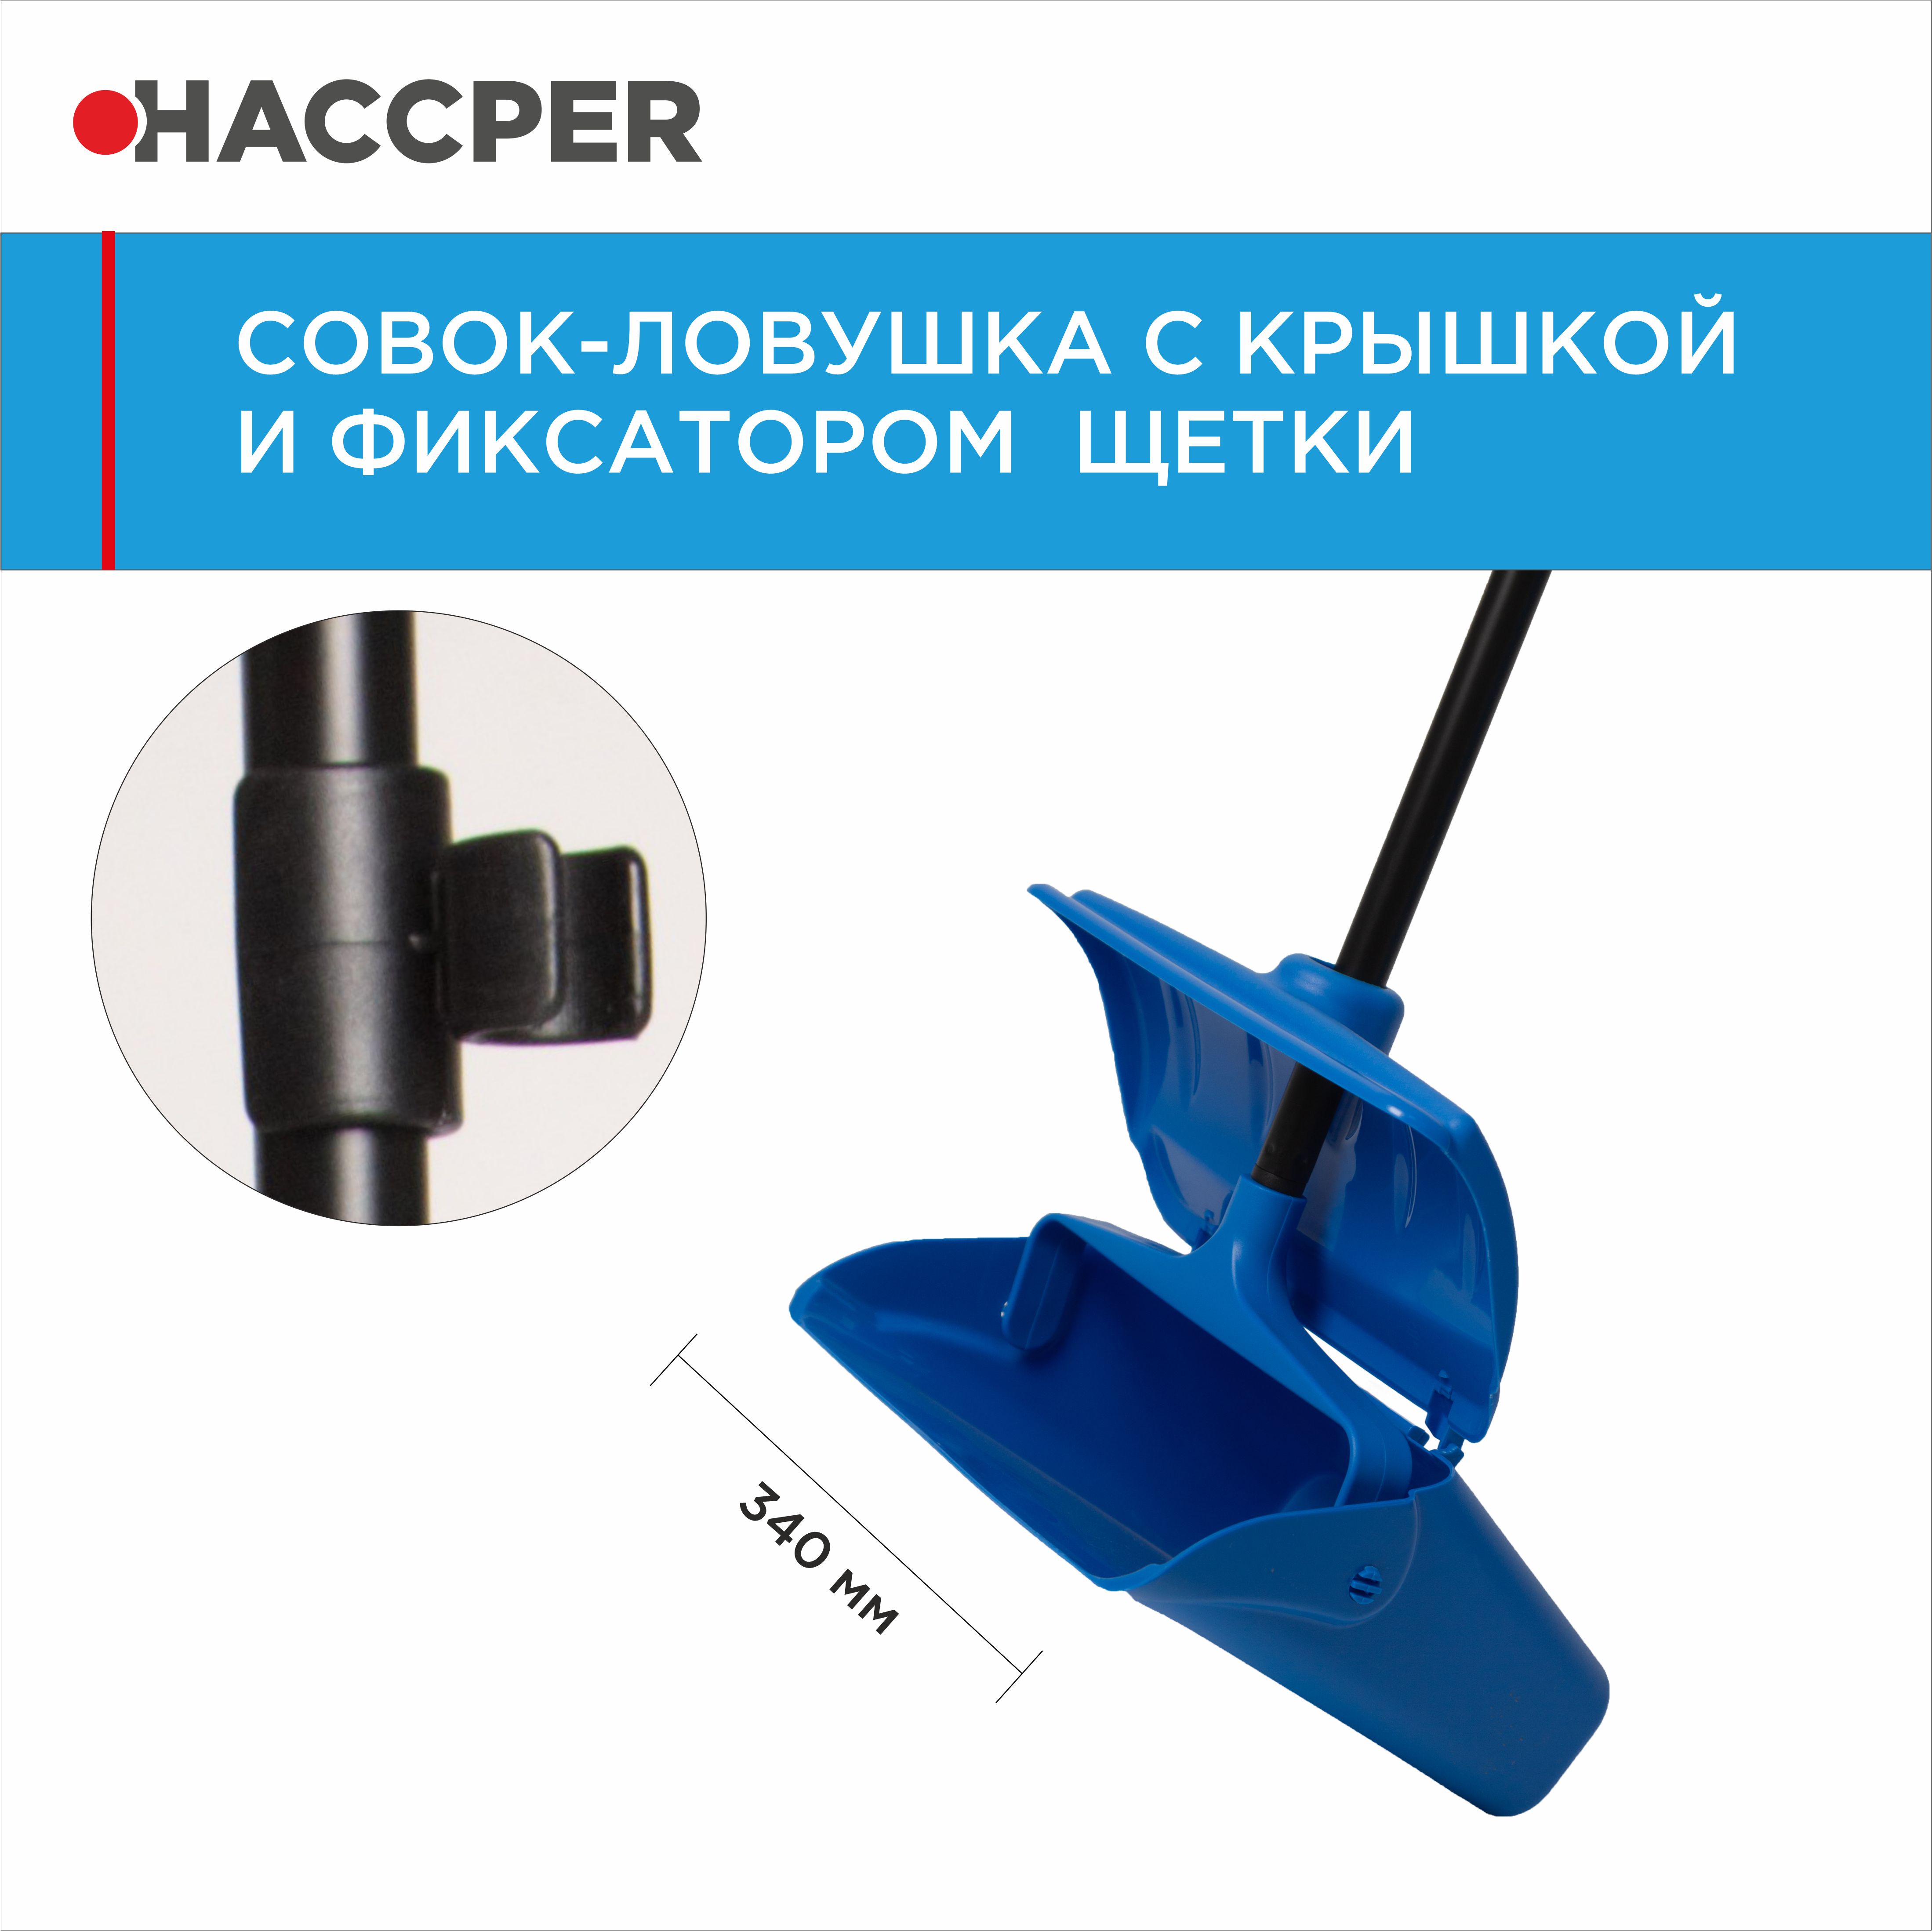 Совок-ловушка HACCPER с крышкой и фиксатором щетки, синий